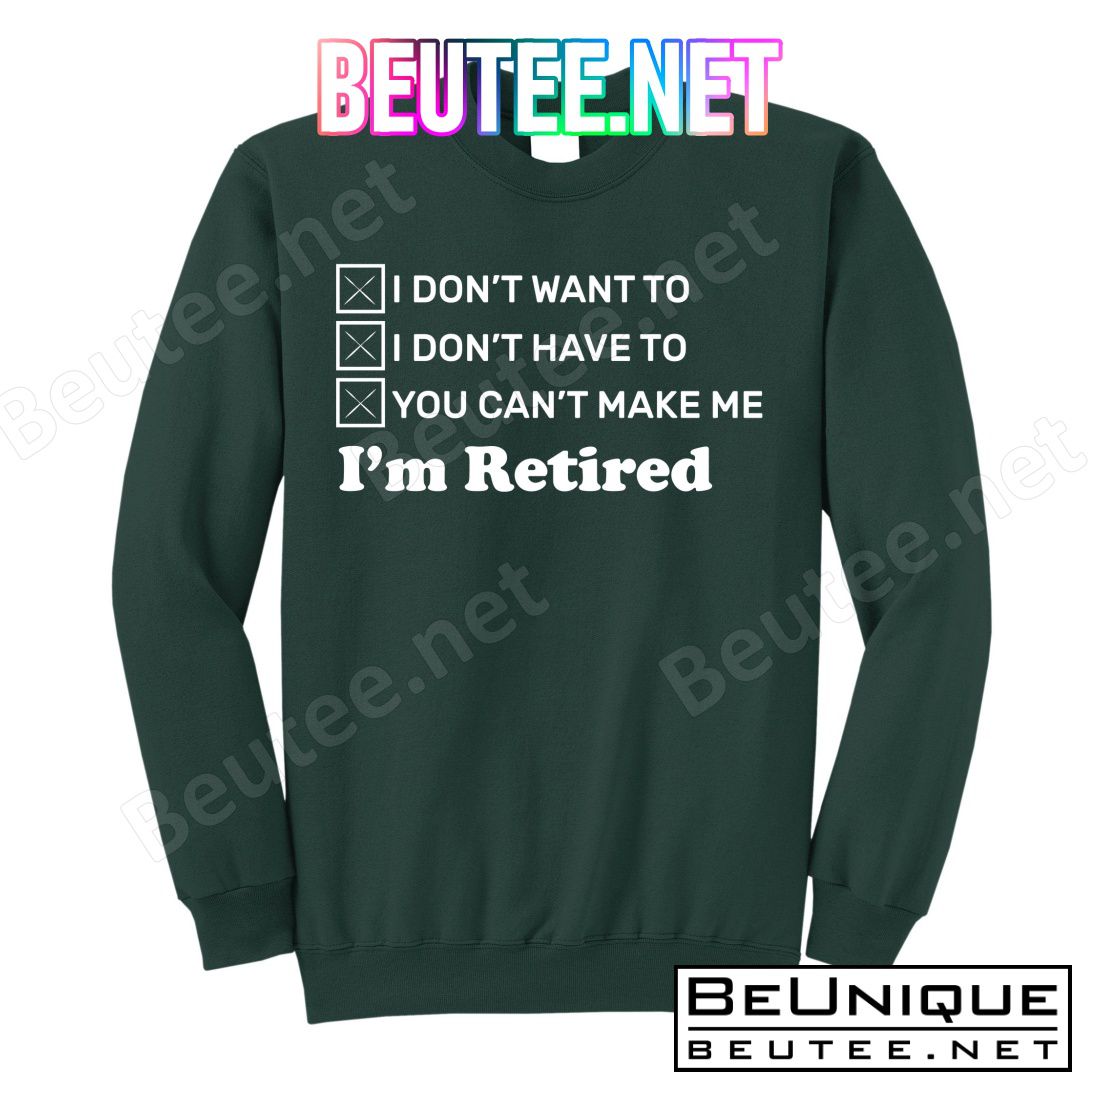 I'm Retired T-Shirts